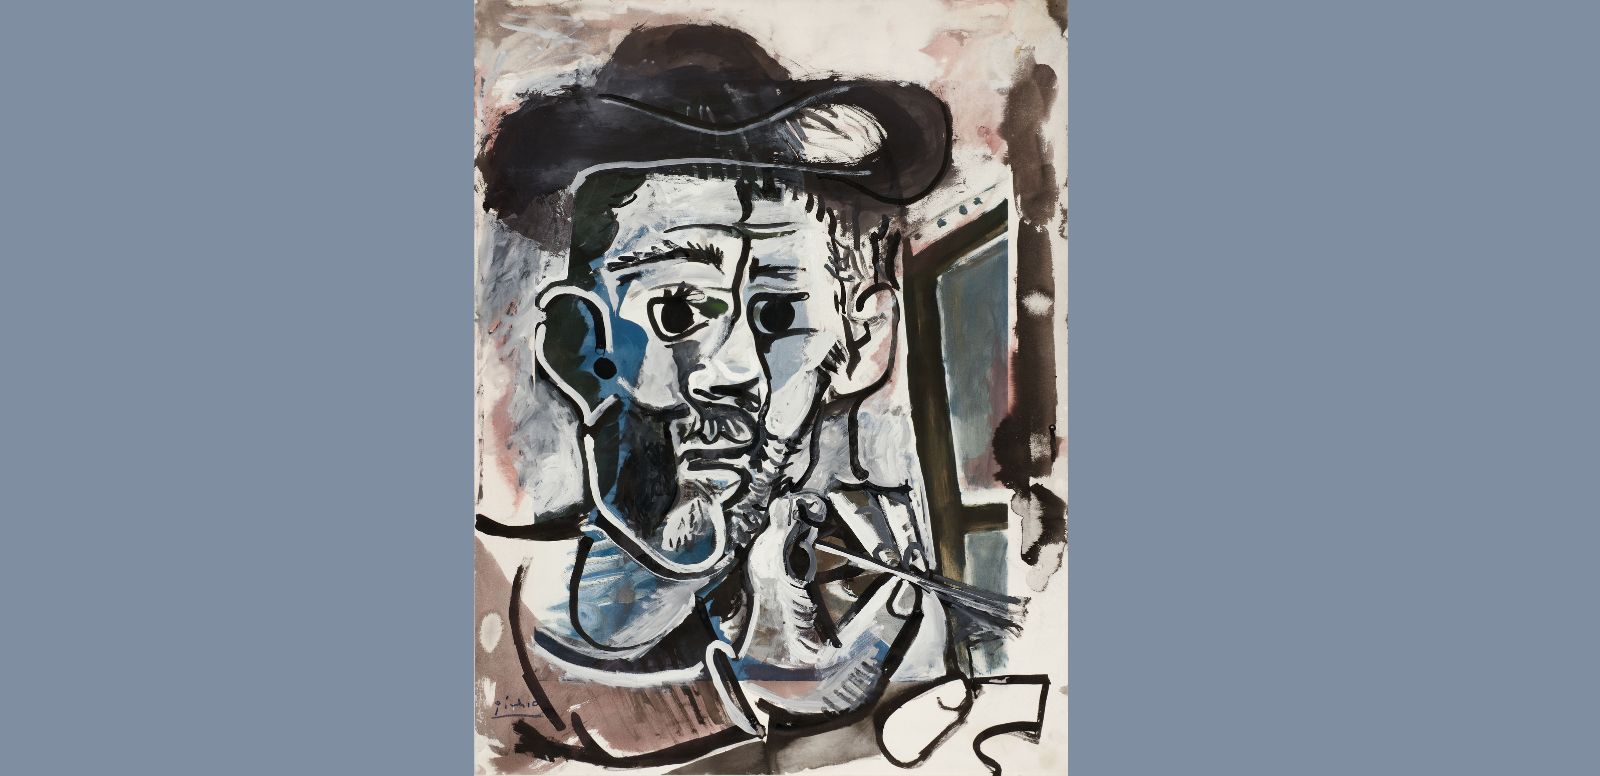 Pablo Picasso, "El pintor trabajando", 1964 